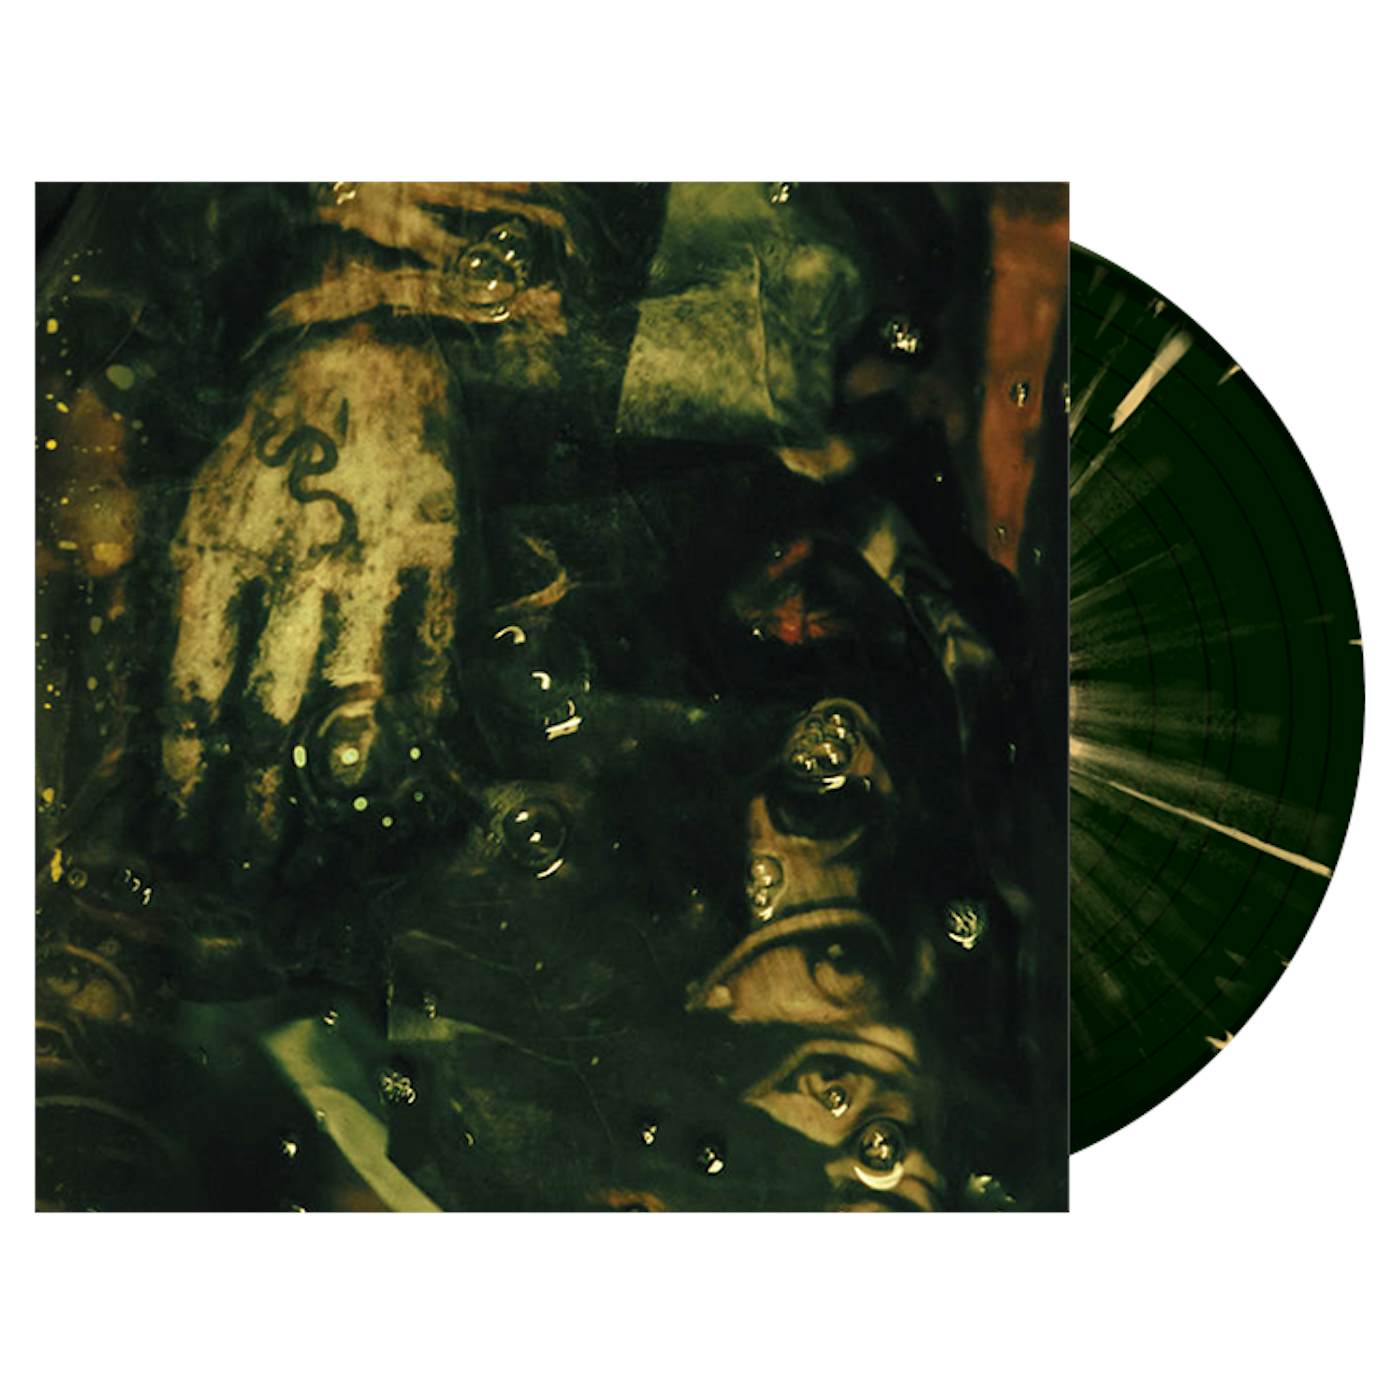 ORANSSI PAZUZU - 'Mestarin Kynsi' 2xLP (Swamp Green) (Vinyl)